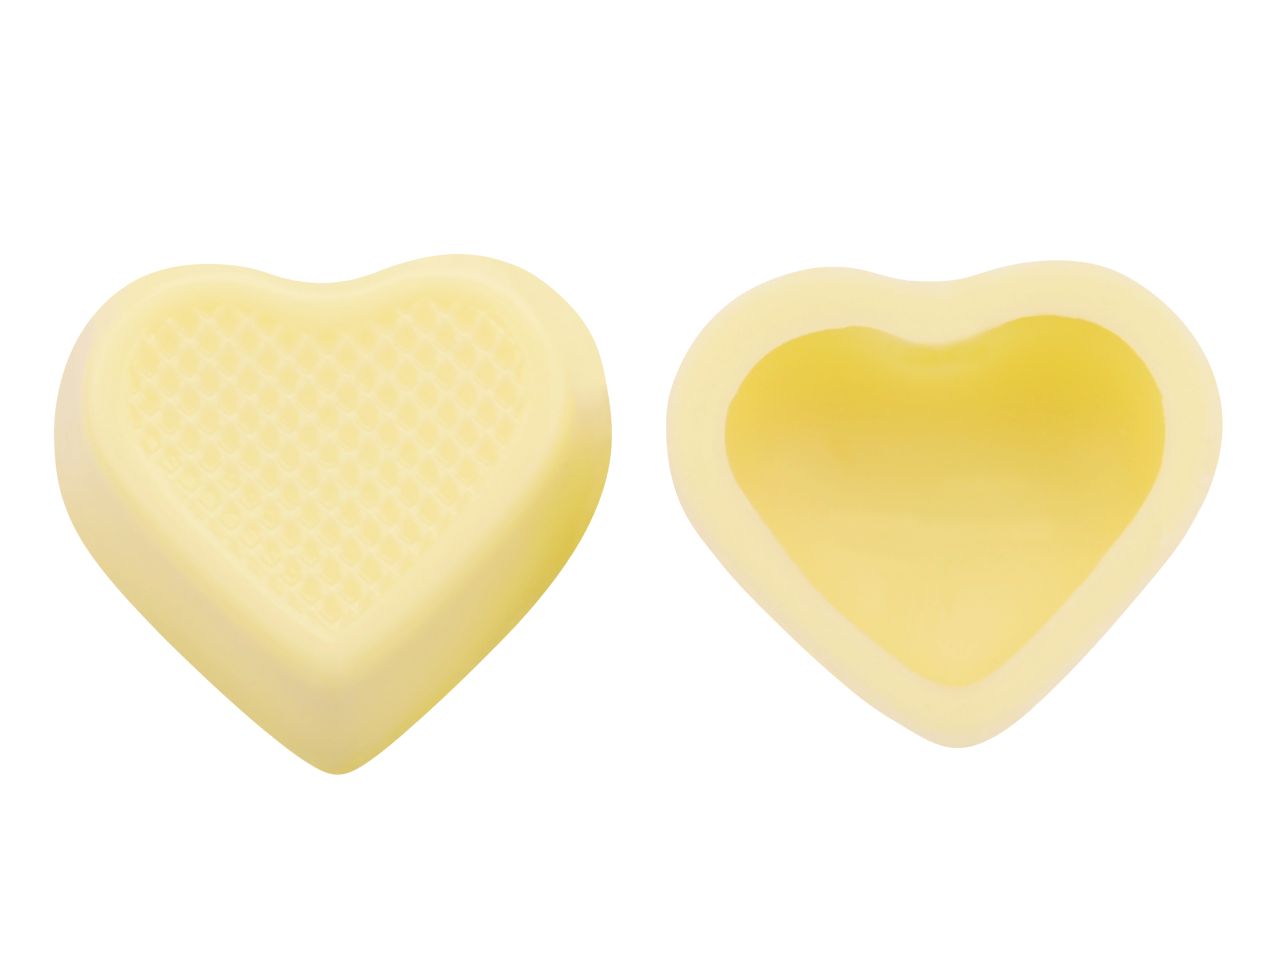 Herz-Schalen für Pralinen Weiße Schokolade, 54 Stück